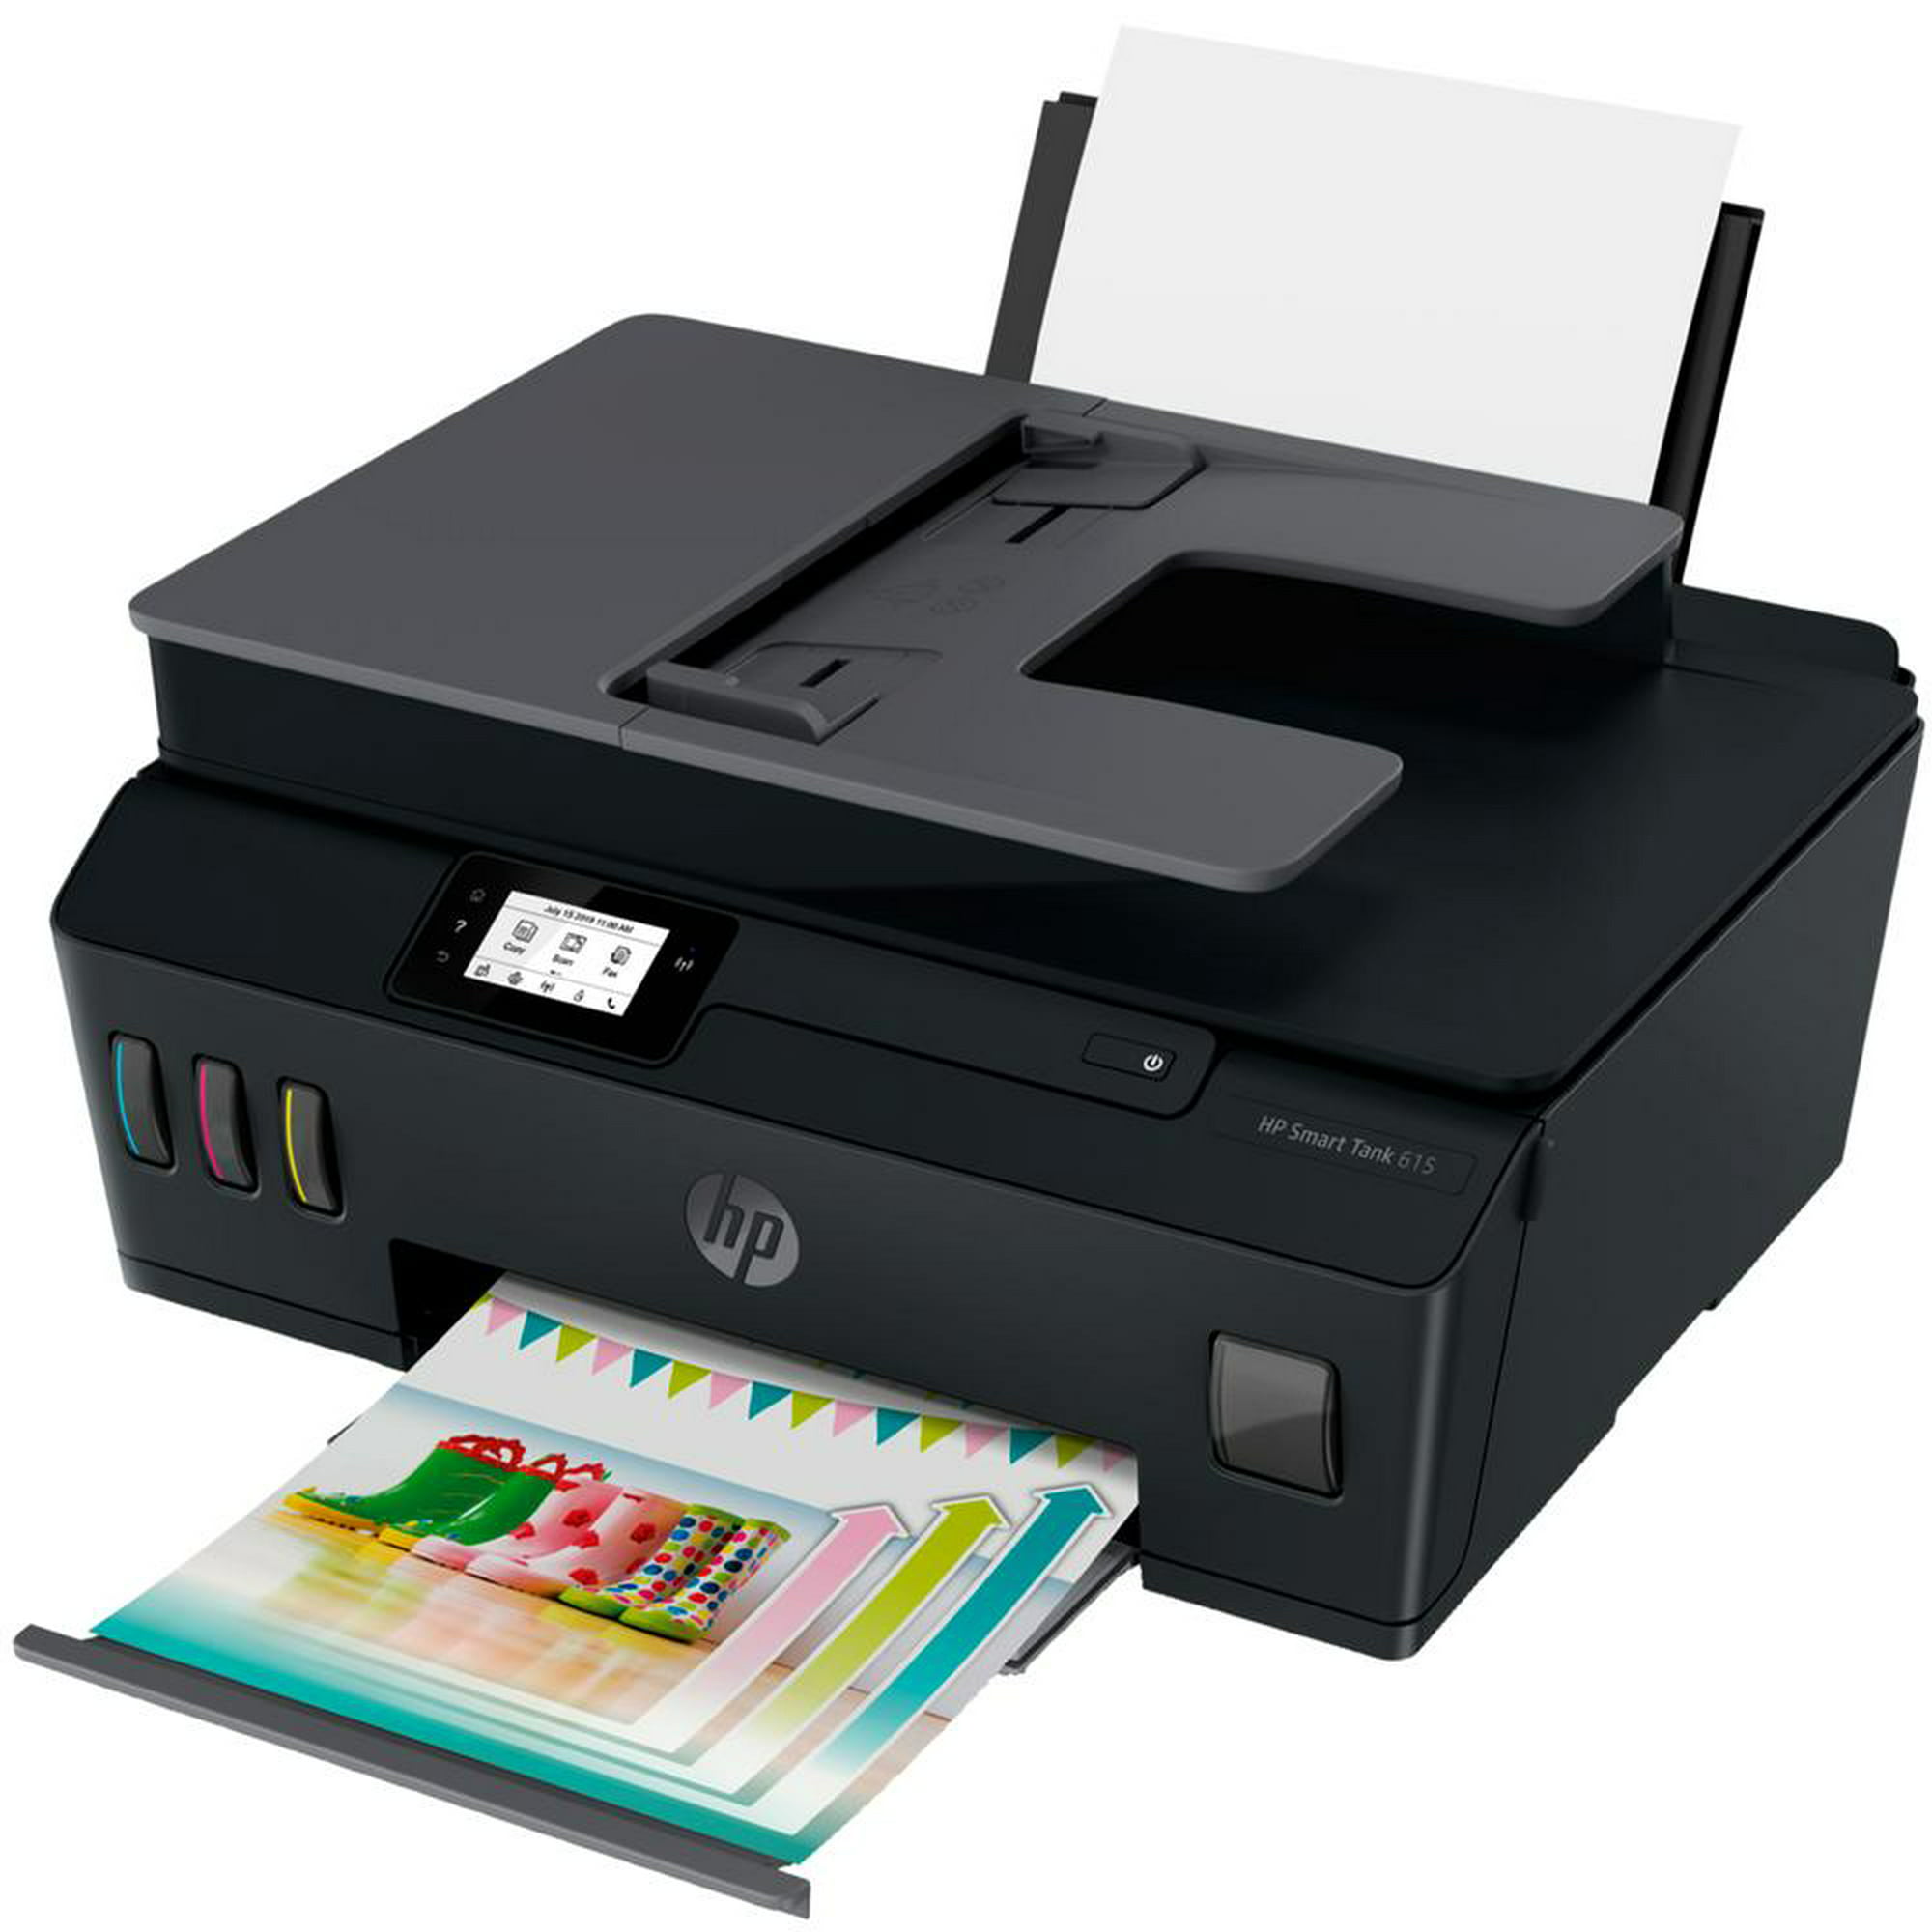 Impresora HP Multifuncional Ink Tank 315 - Negro. Al mejor precio